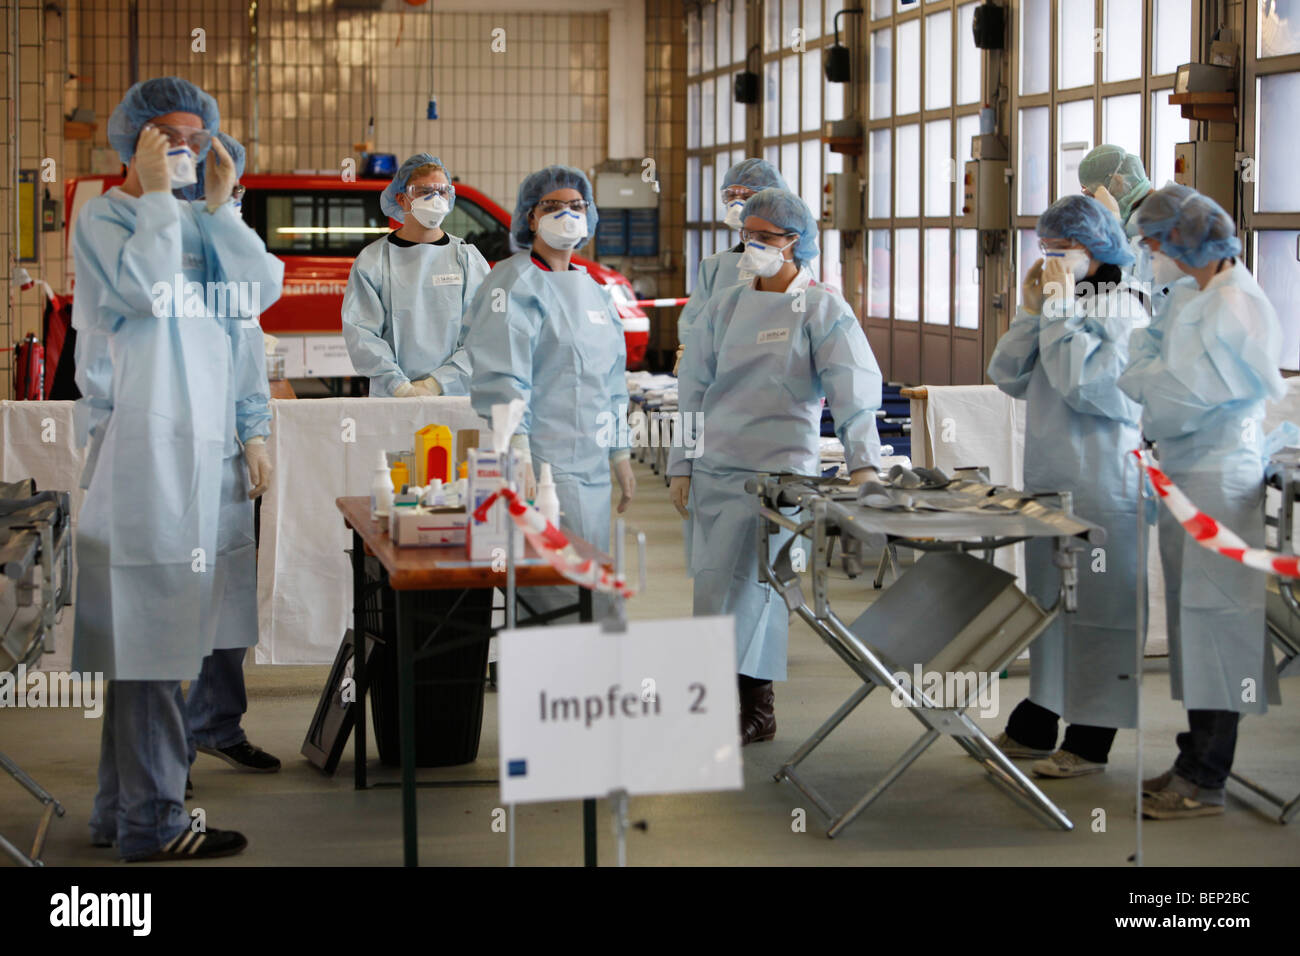 Esercizio di una squadra di vigili del fuoco, la vaccinazione di massa di persone contro un virus, una pandemia di esercizio, Essen, Germania. Foto Stock